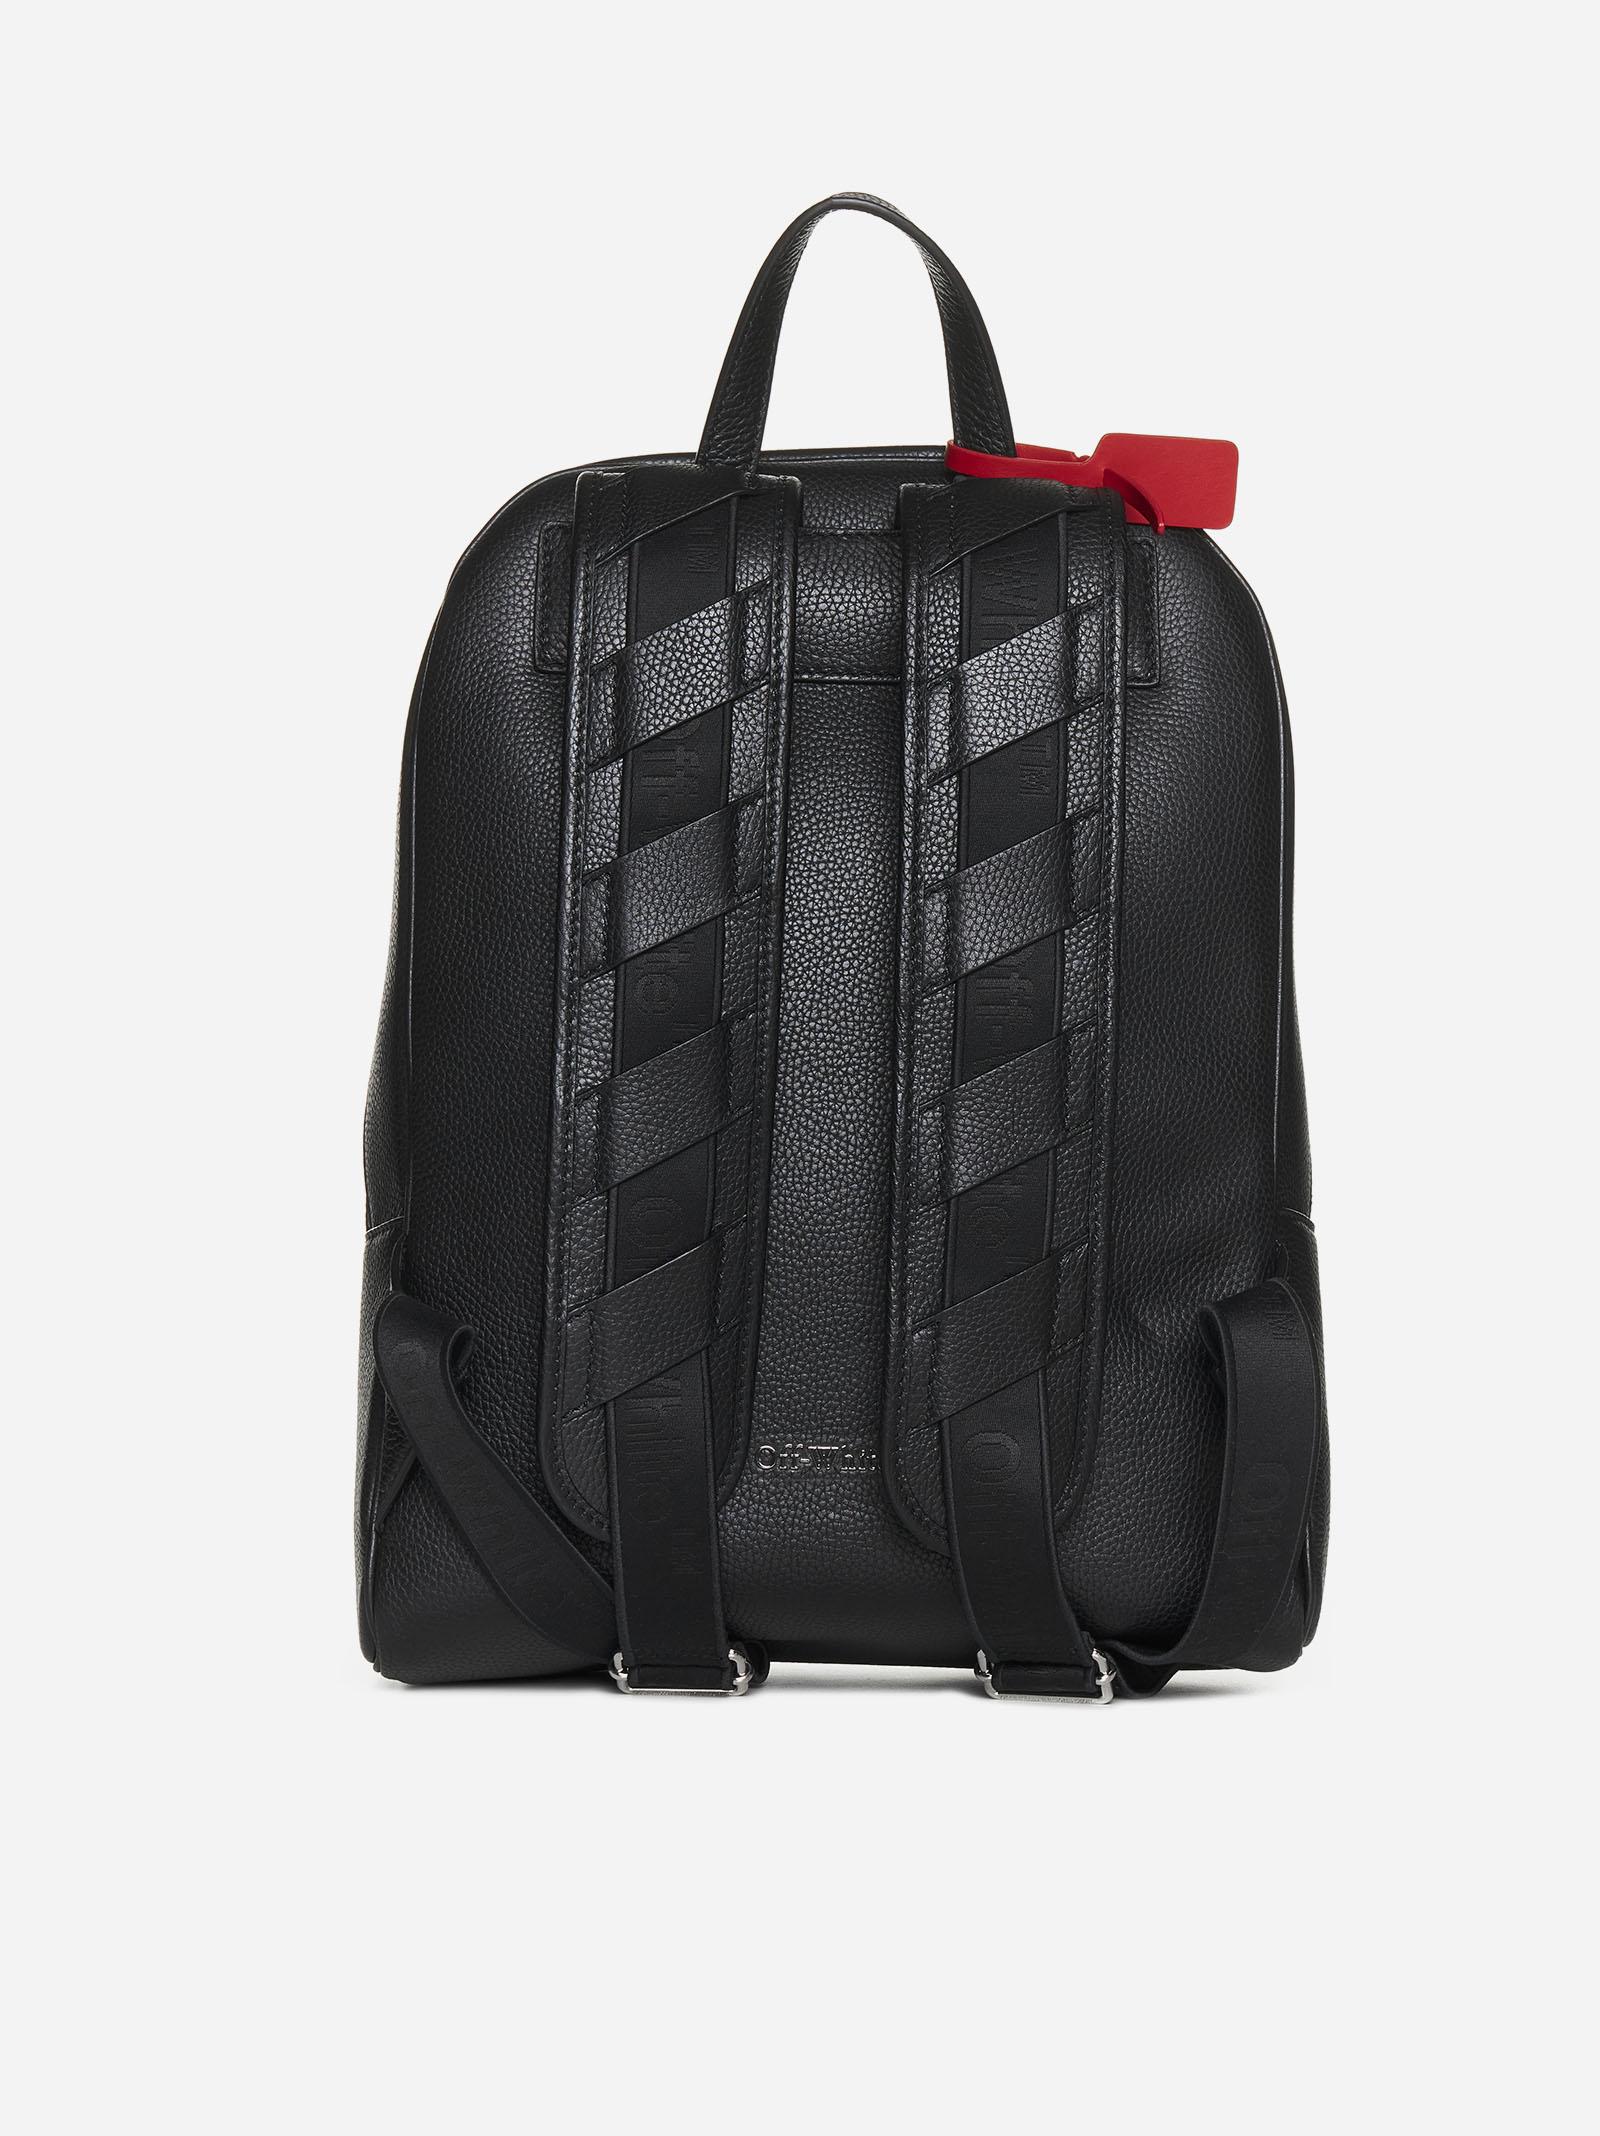 Off-White c/o Virgil Abloh Binder Leather Backpack in Black for